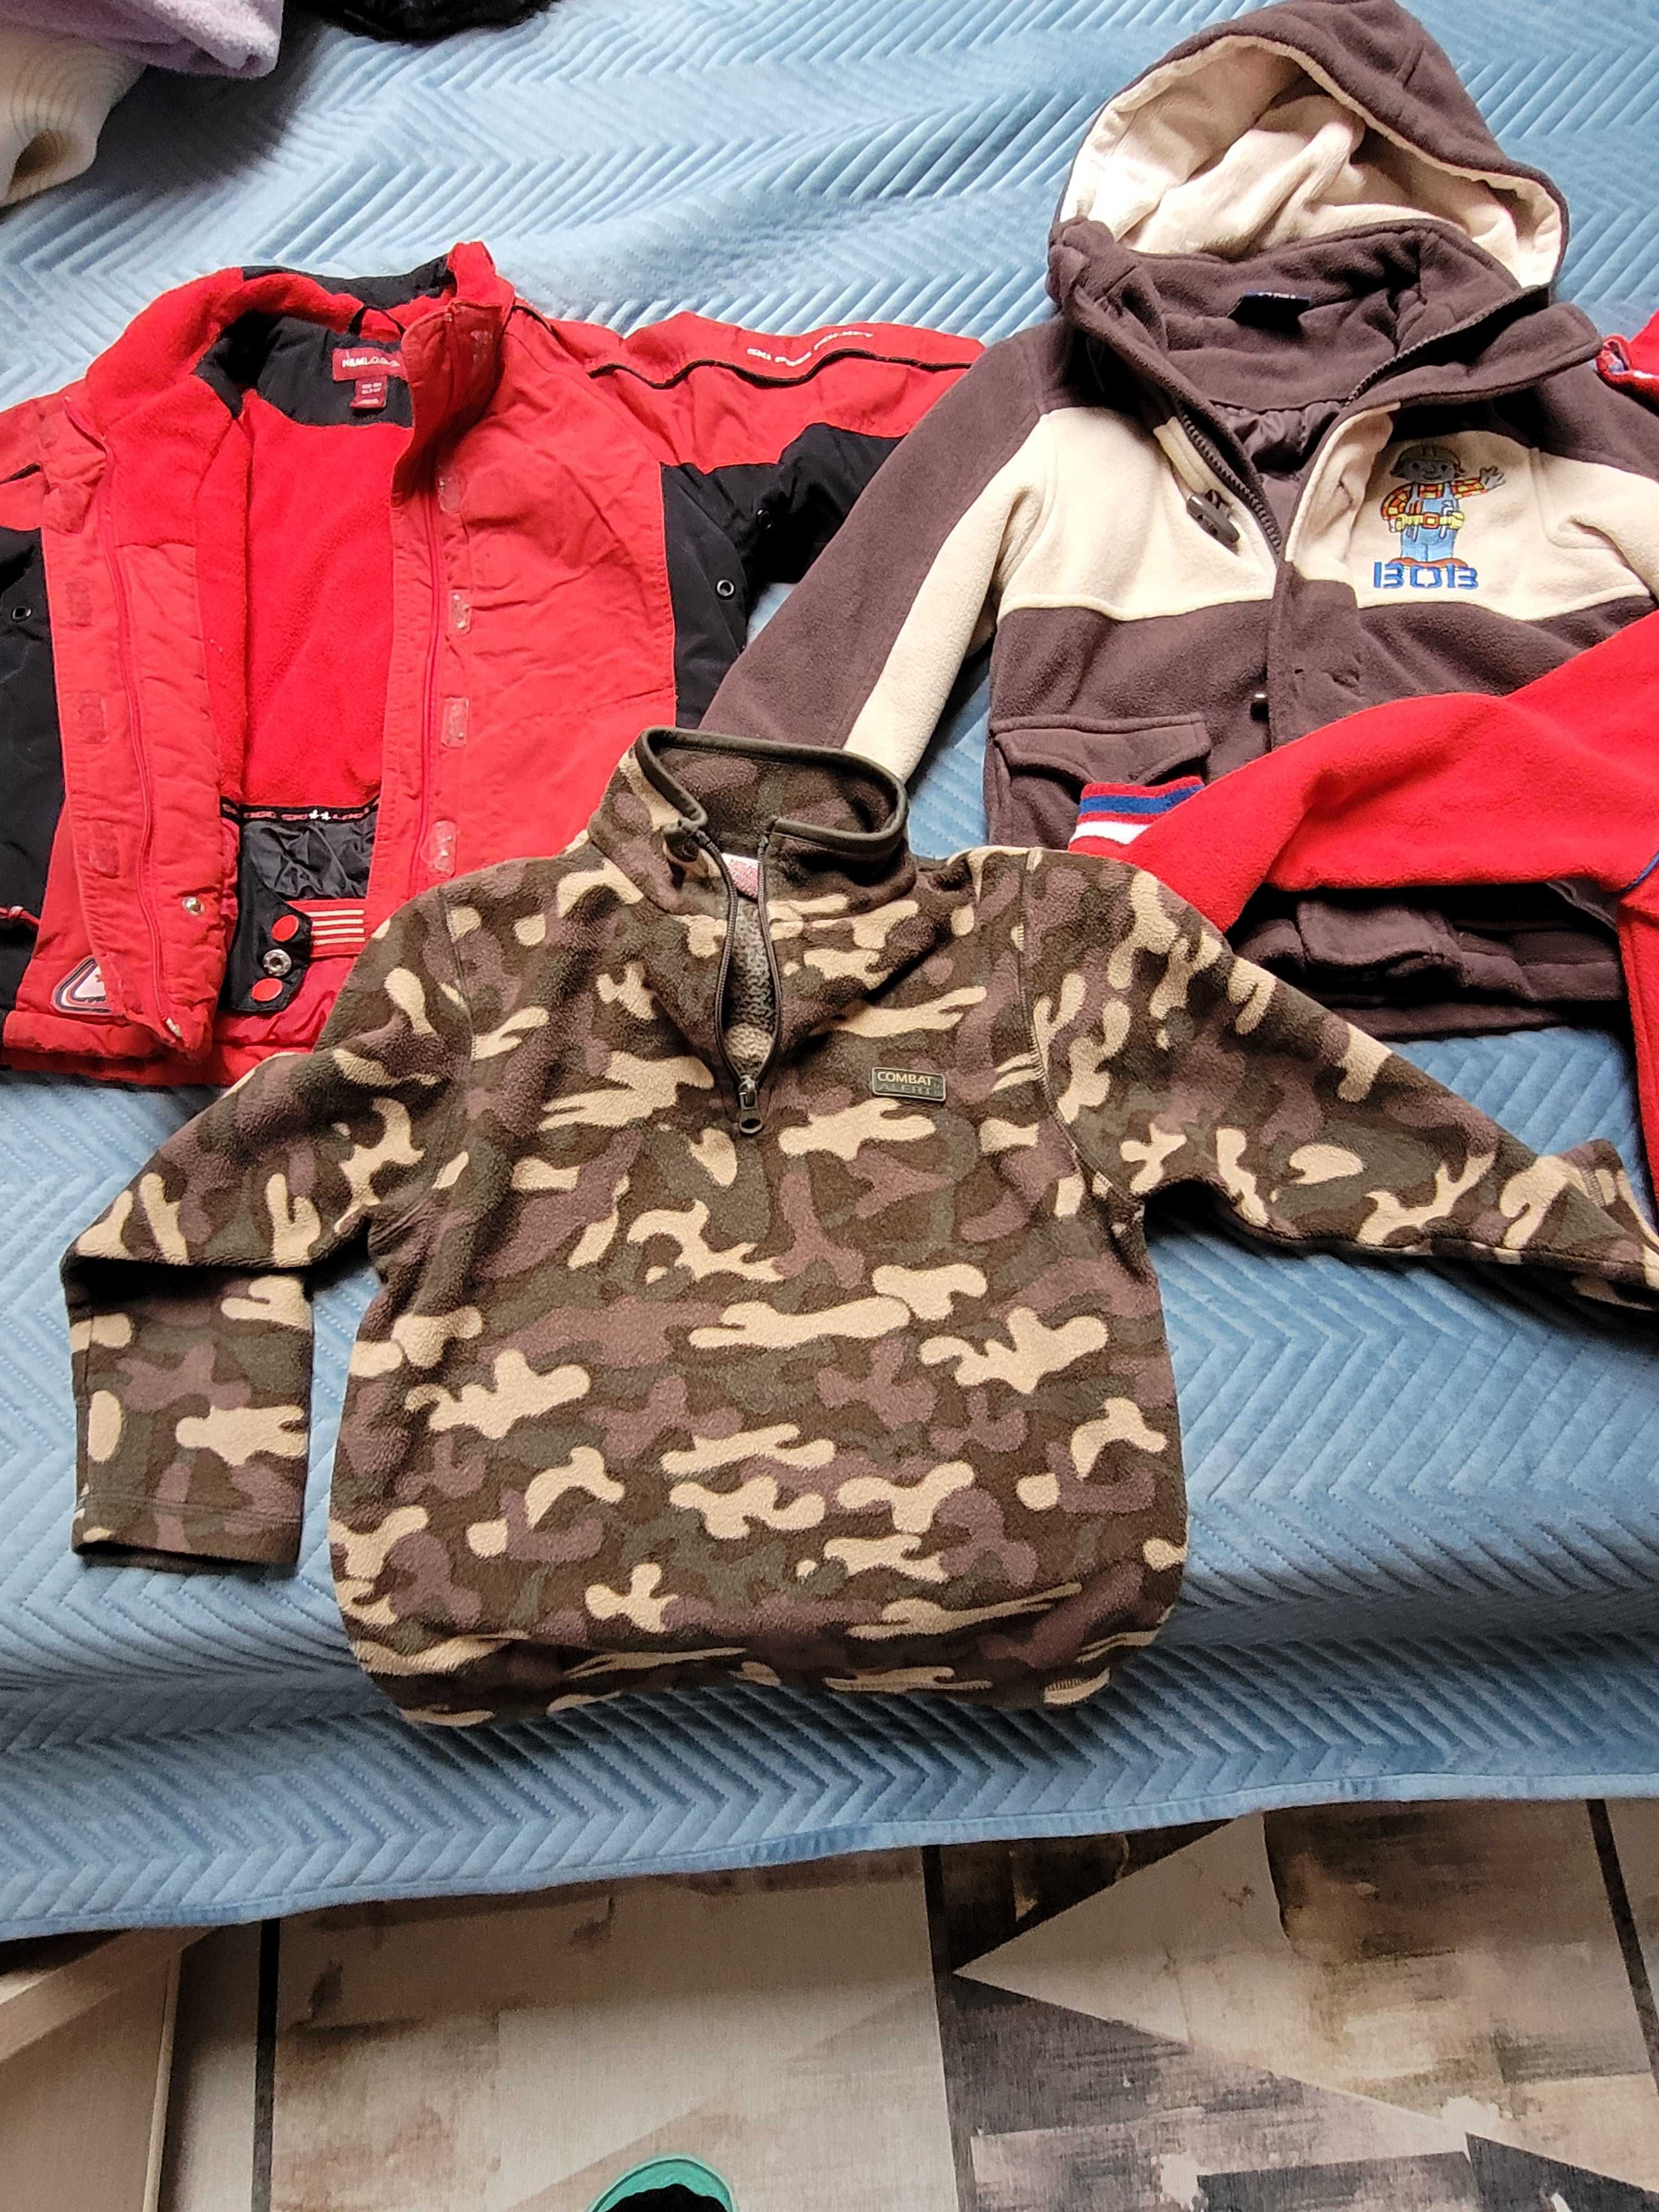 Zestaw ubrań dla chłopca 3-5 lat: 2 kurtki (3-4 lata), 4 szt. bluz